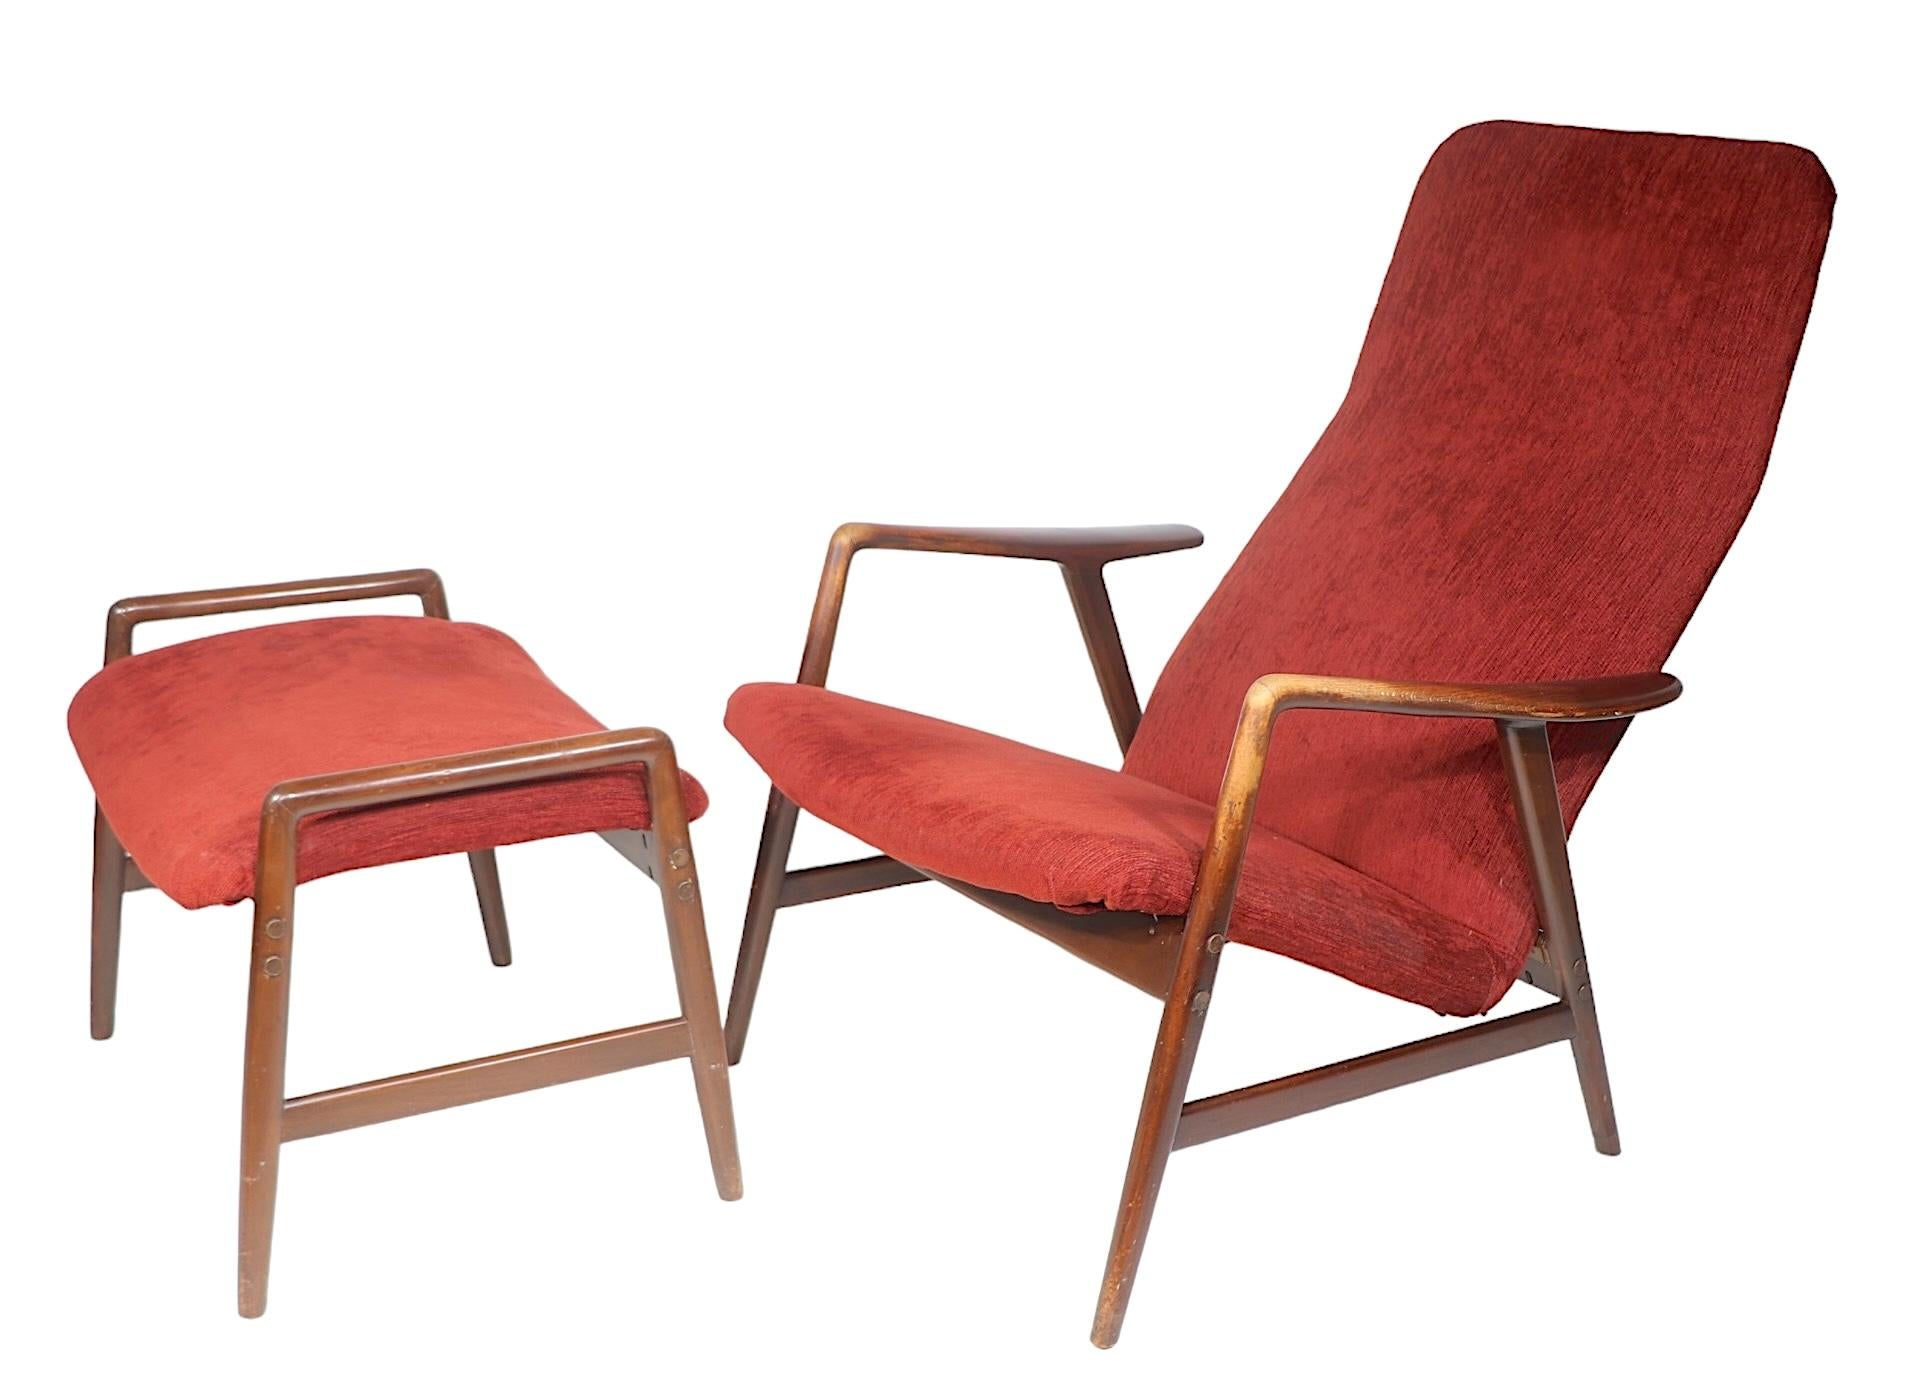 Architektonischer Mid-Century-Schick  Sessel und Ottomane, entworfen von Alf Svensson für Fritz Hansen, hergestellt in Dänemark um 1960. Dieses Exemplar ist in einem sehr guten, sauberen, gebrauchsfertigen Zustand, es ist derzeit in  eine spätere,